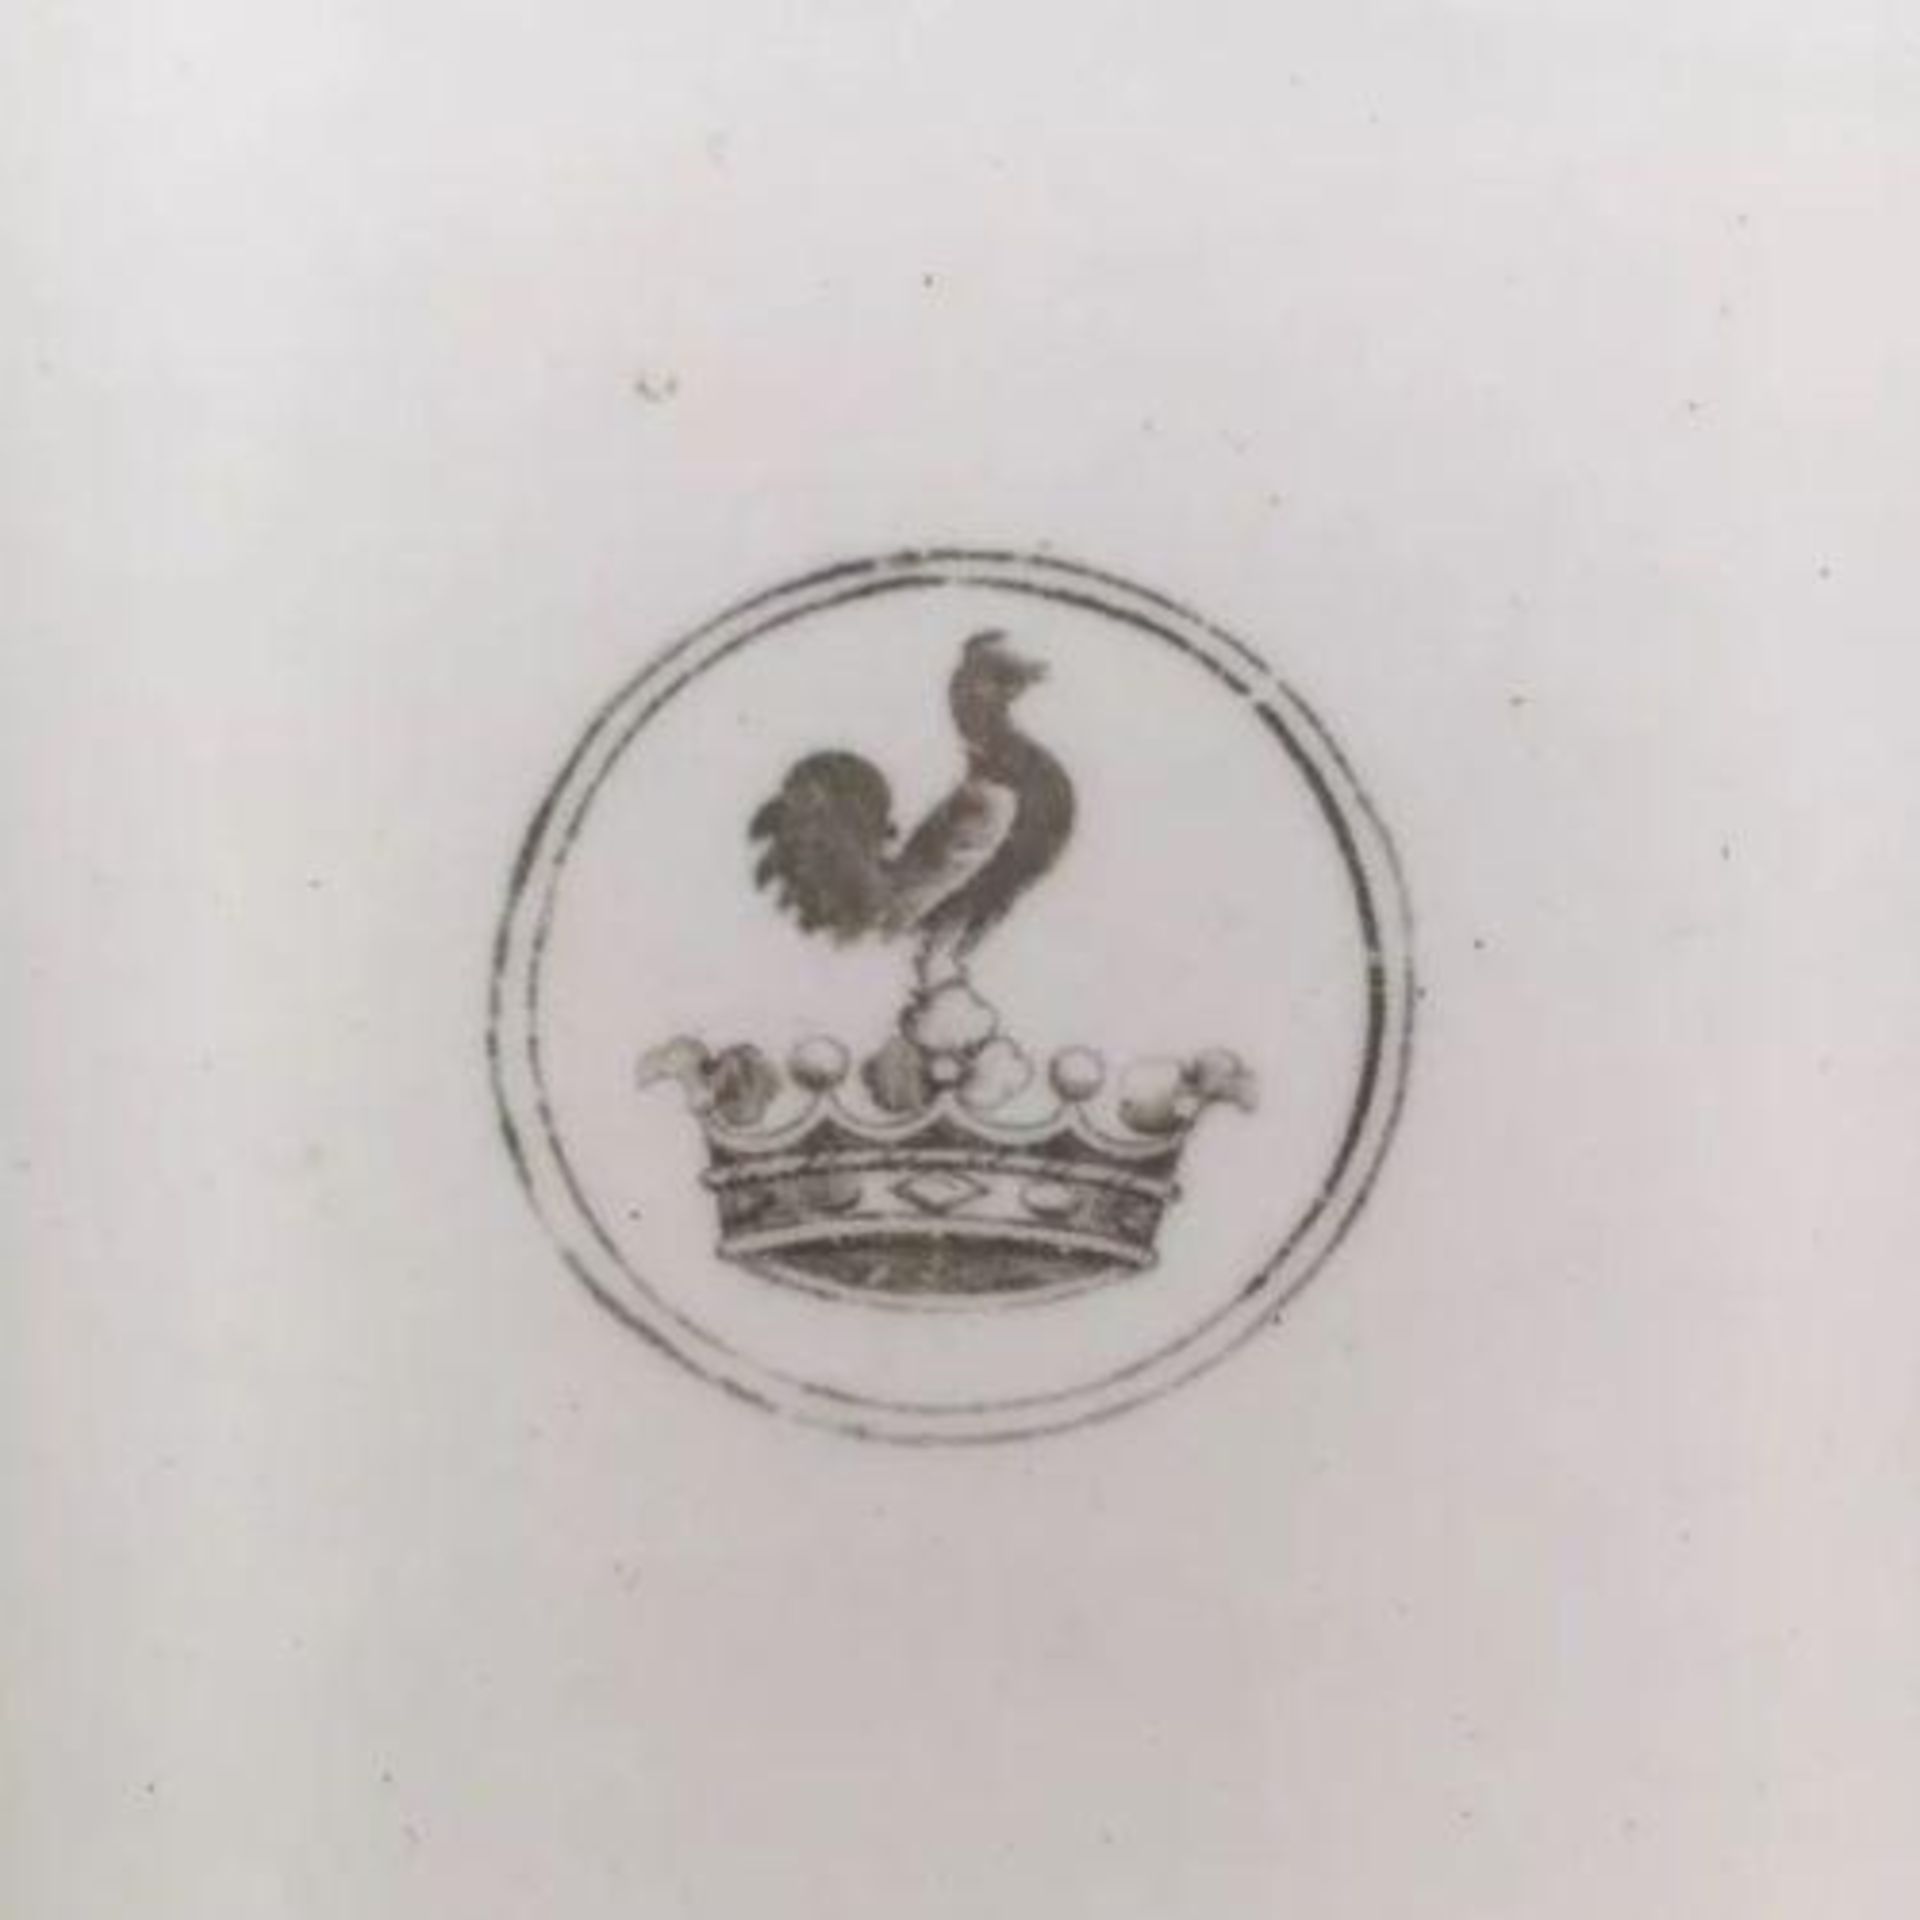 Rare Antique Minton Plate 1872 Armorial Crest Rooster atop Crown - Bild 3 aus 3